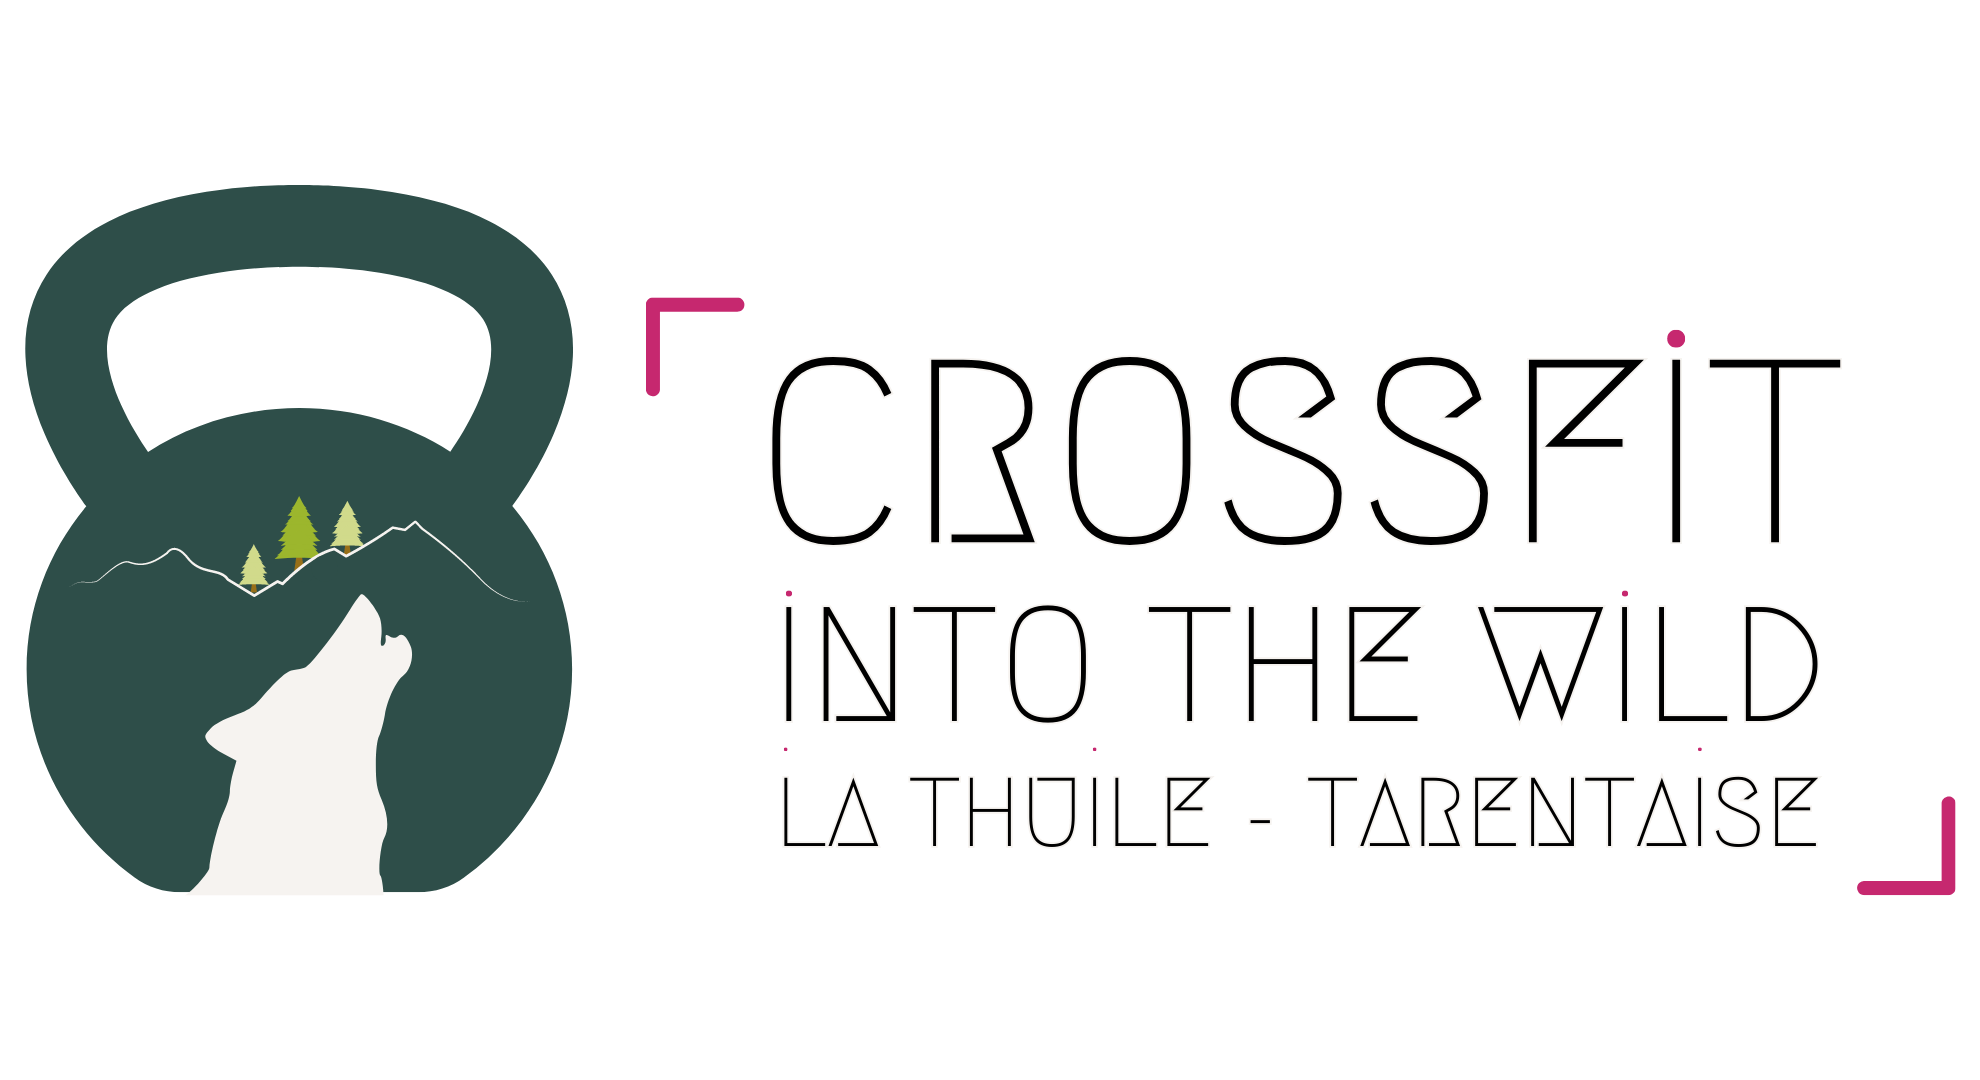 Crossfit Tarentaise